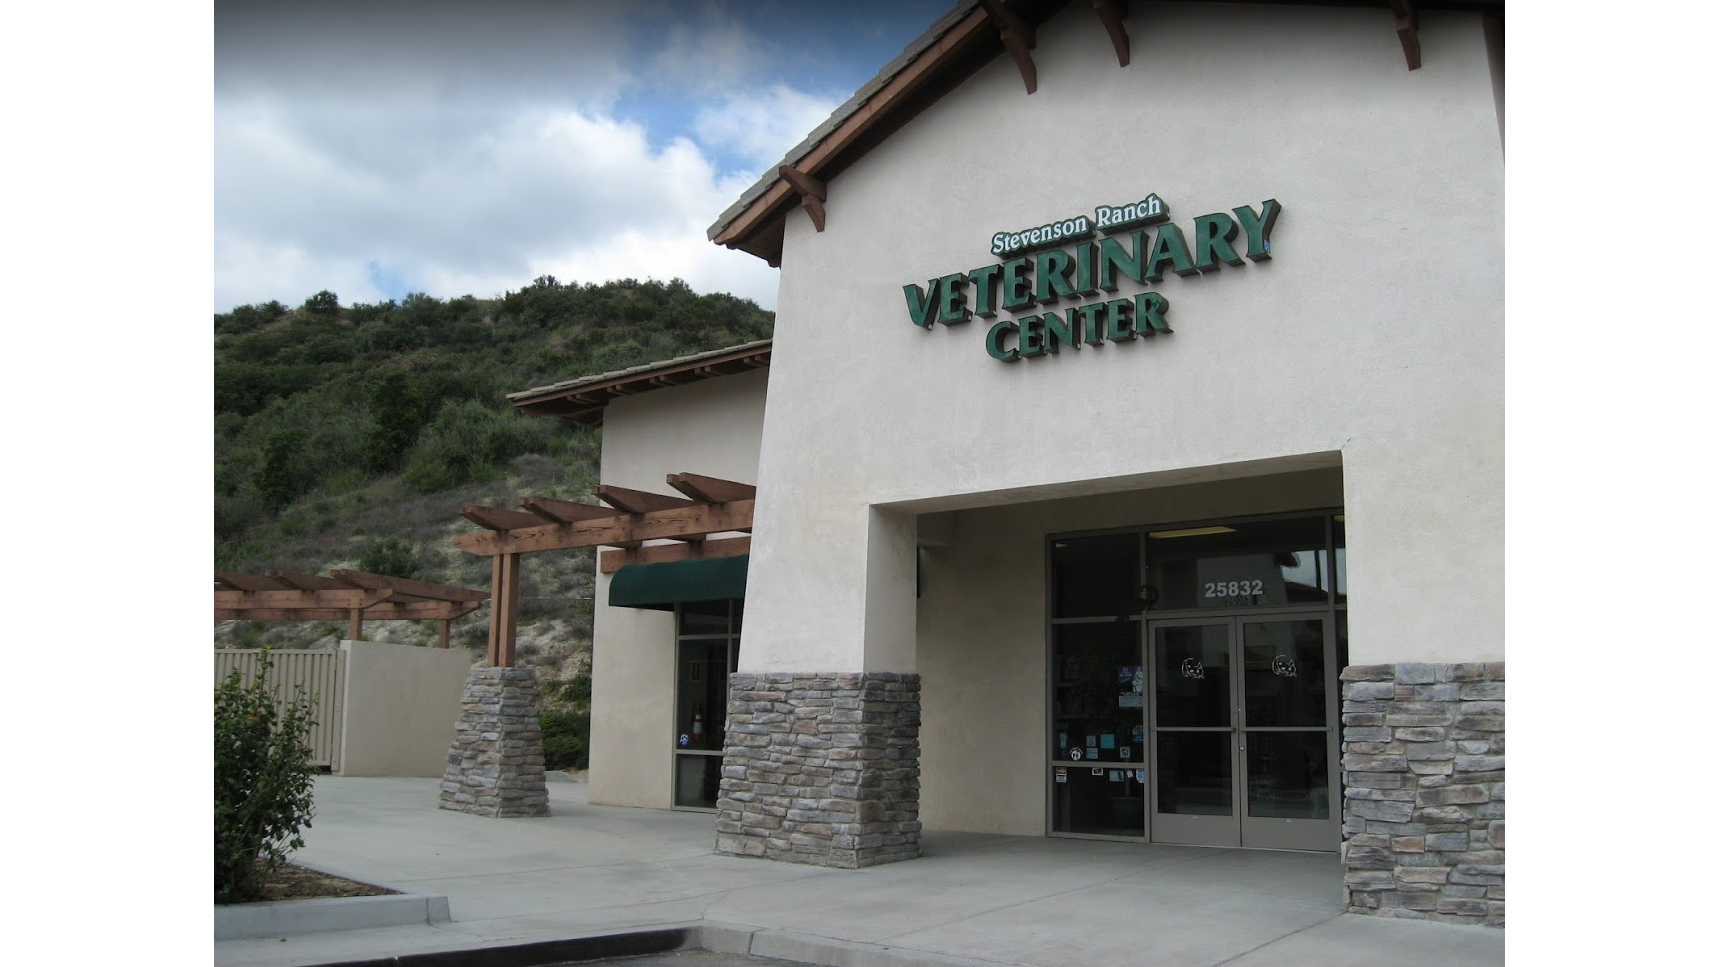 Stevenson Ranch Veterinary Center